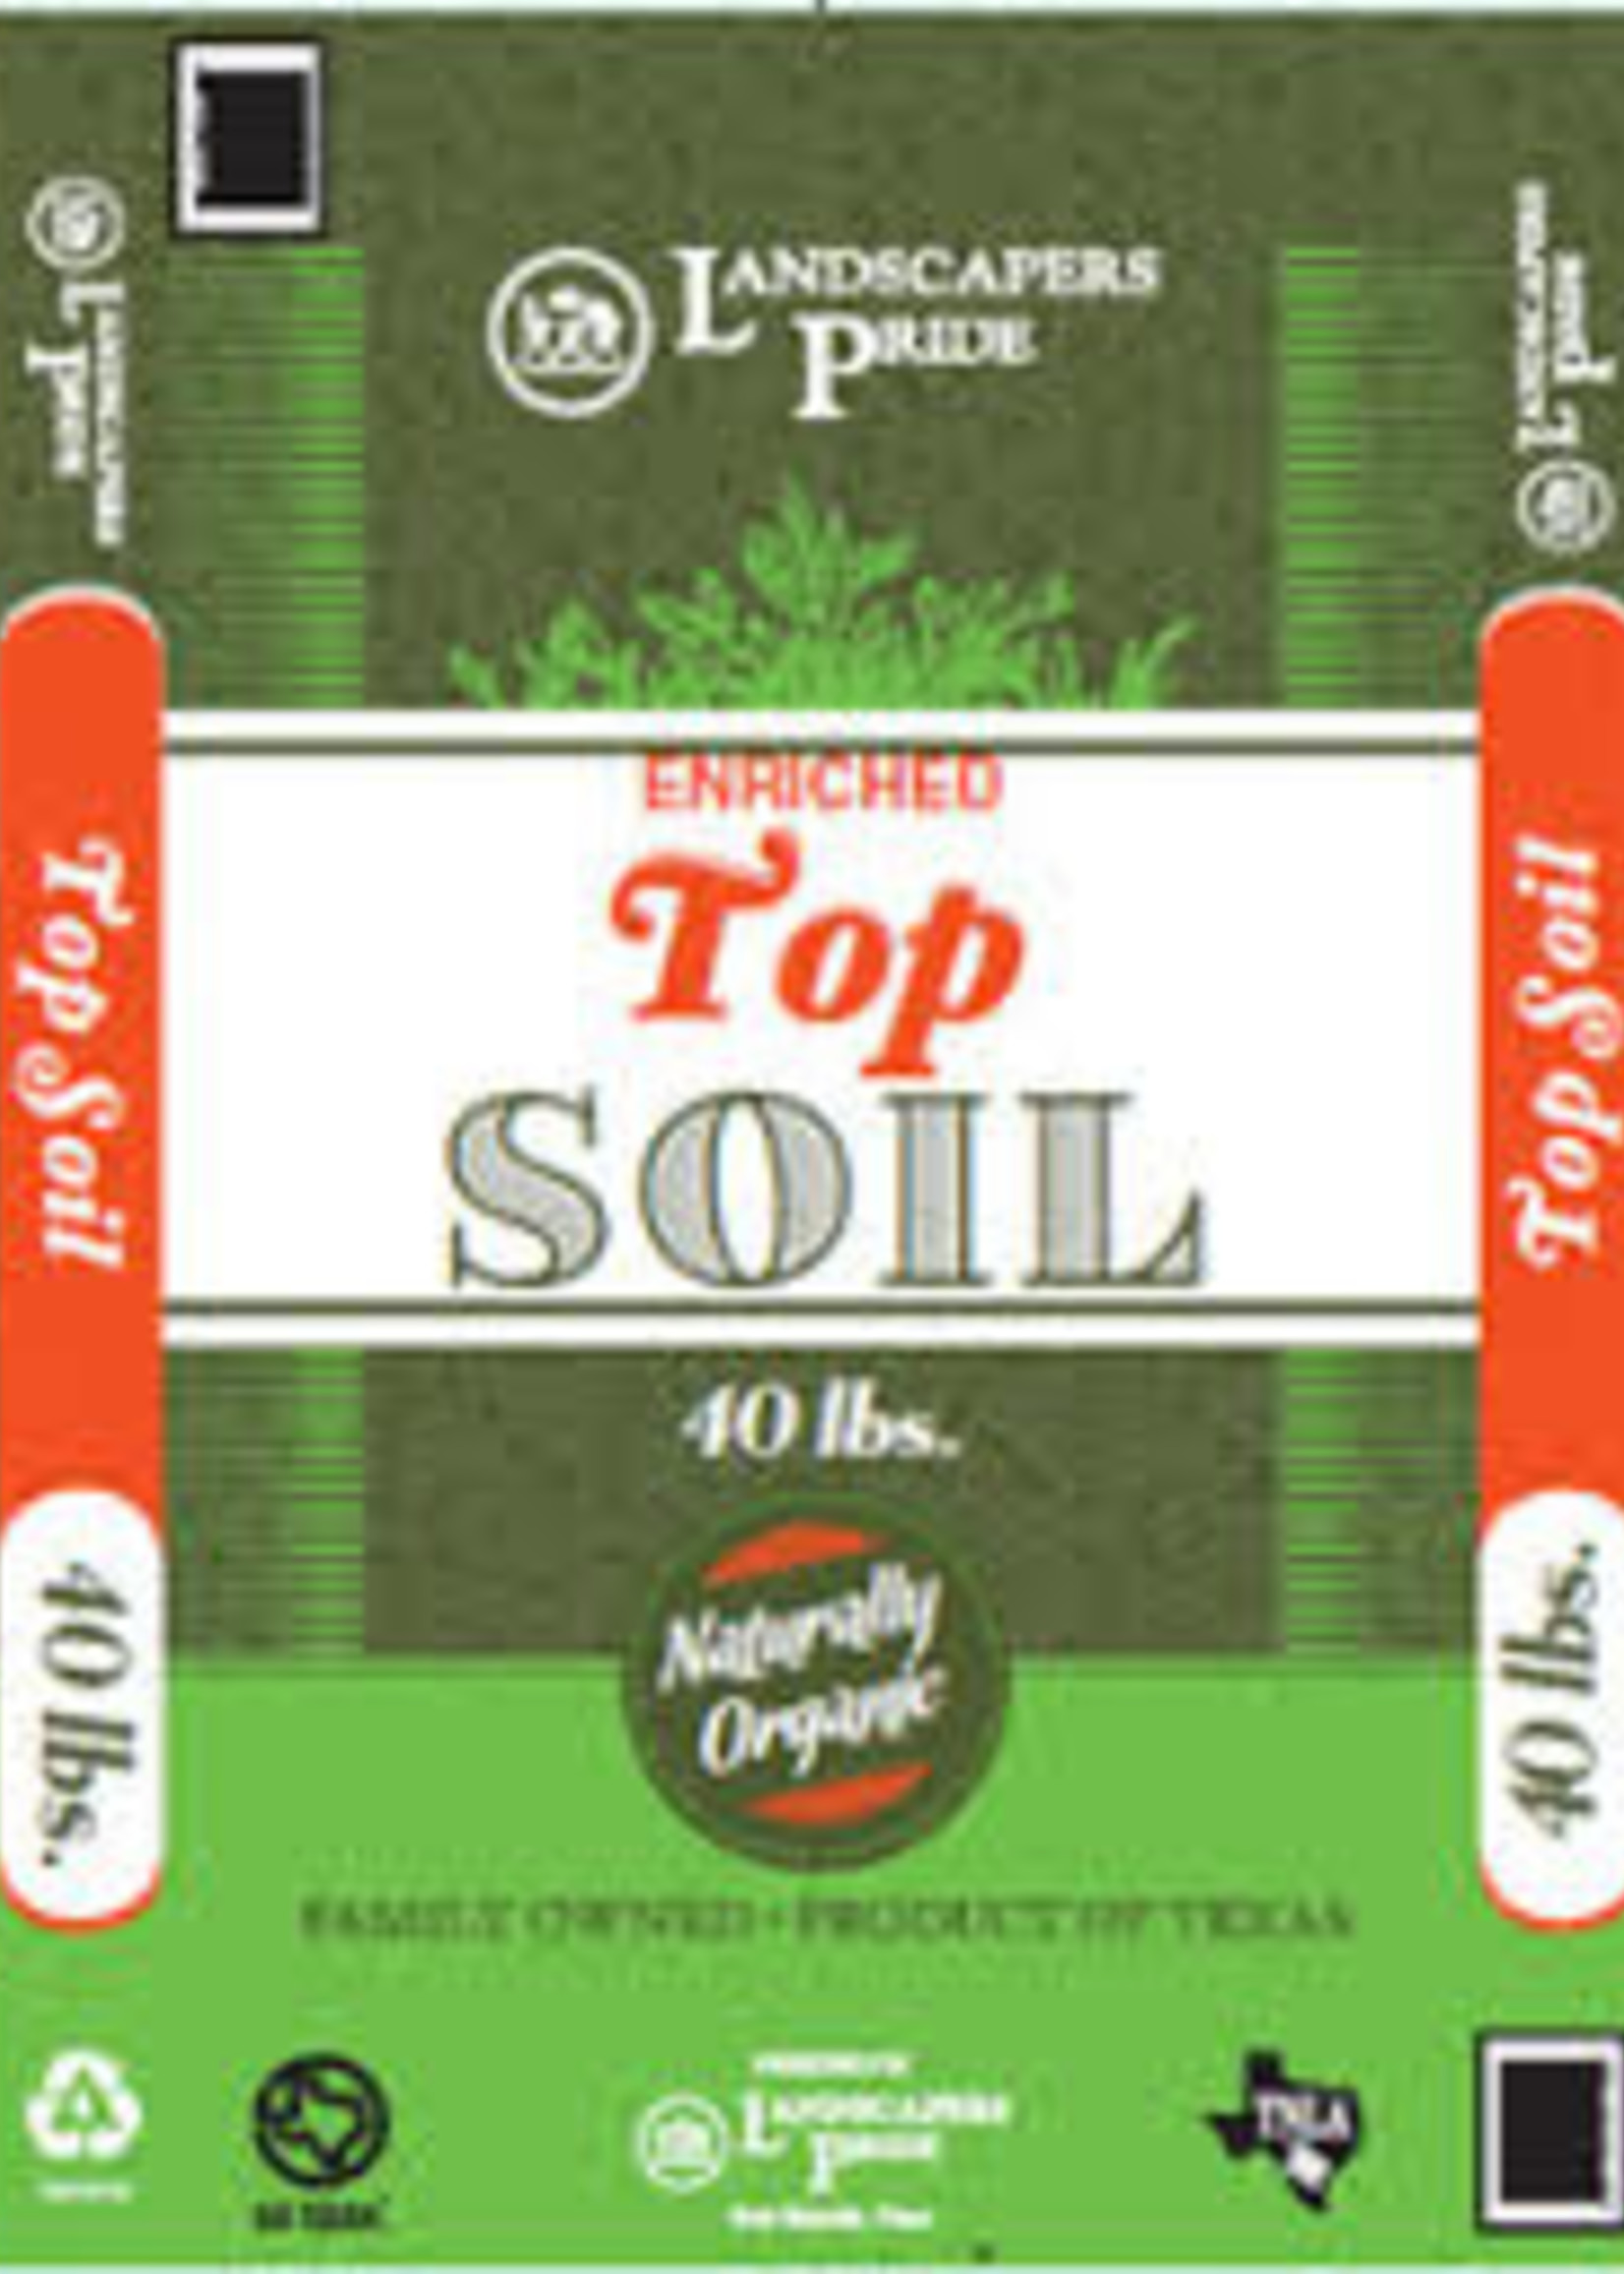 Top Soil 40 lb